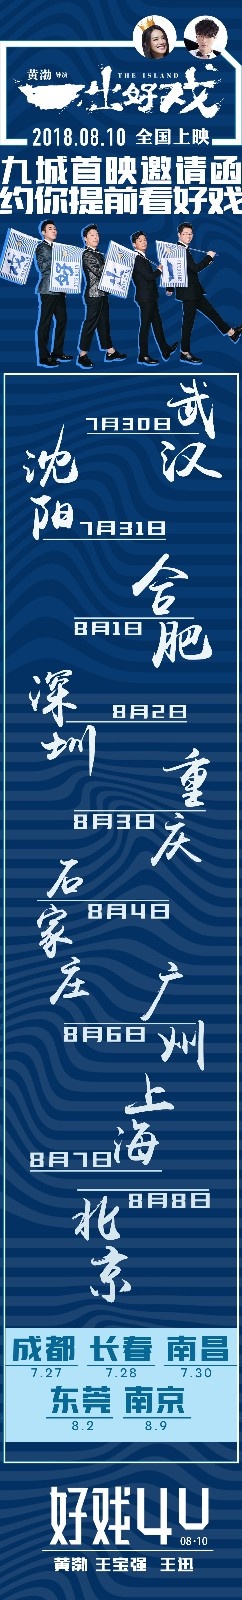 《一出好戏》启动九城首映 黄渤王宝强好戏抢先看(图1)